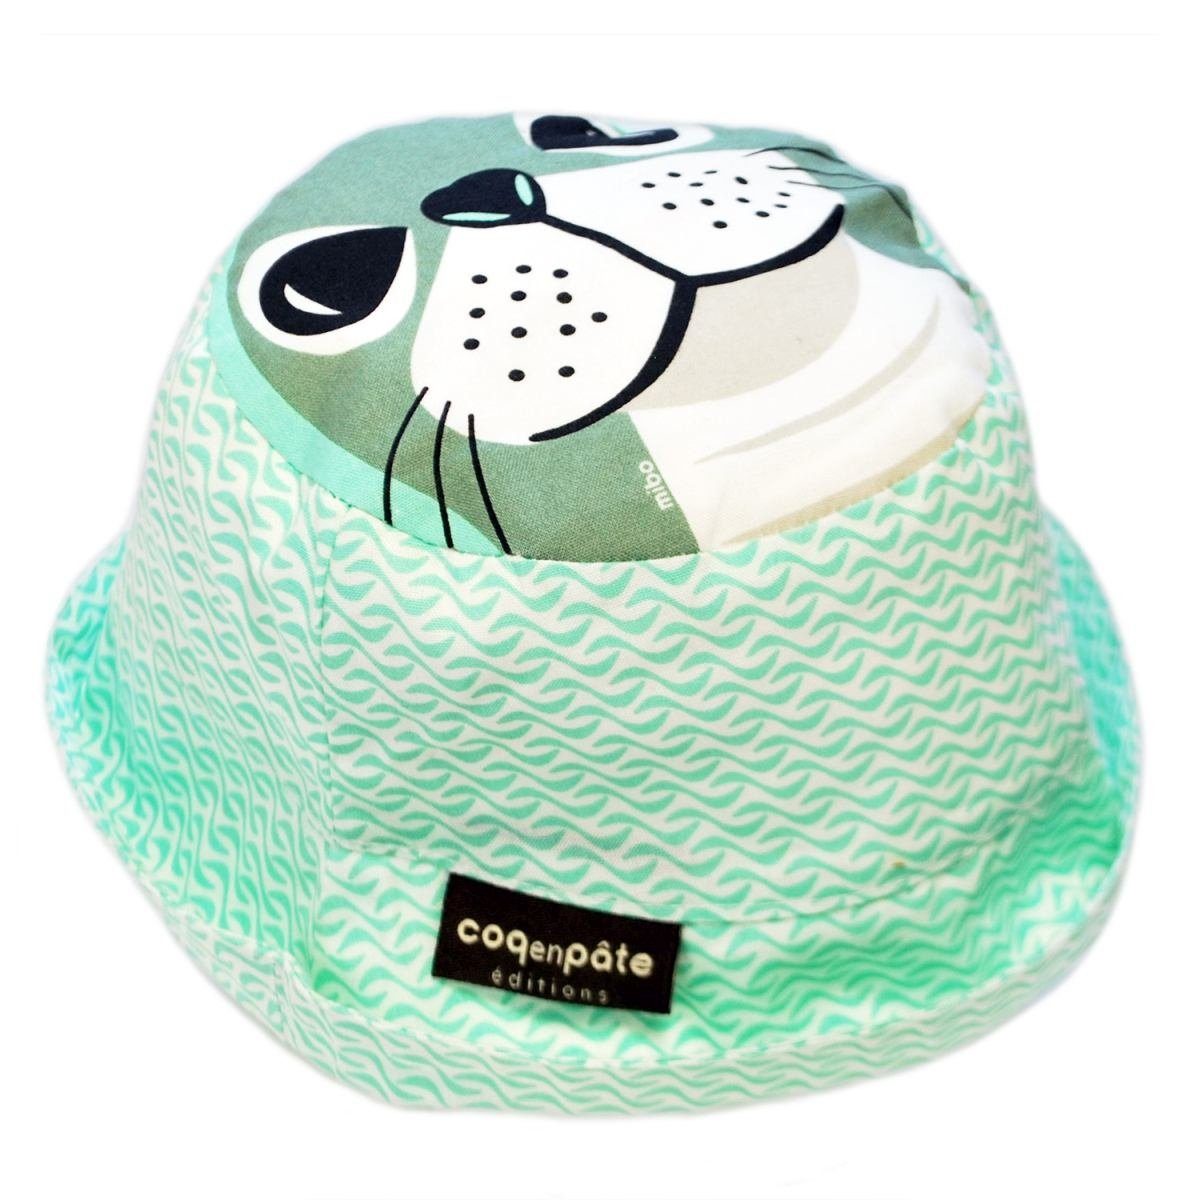 COQ EN PATE Sonnenhut Farbenfroher Kinder-Hut mit Tiermotiven und Mustern Sonnenschutz Robbe - Größe: L